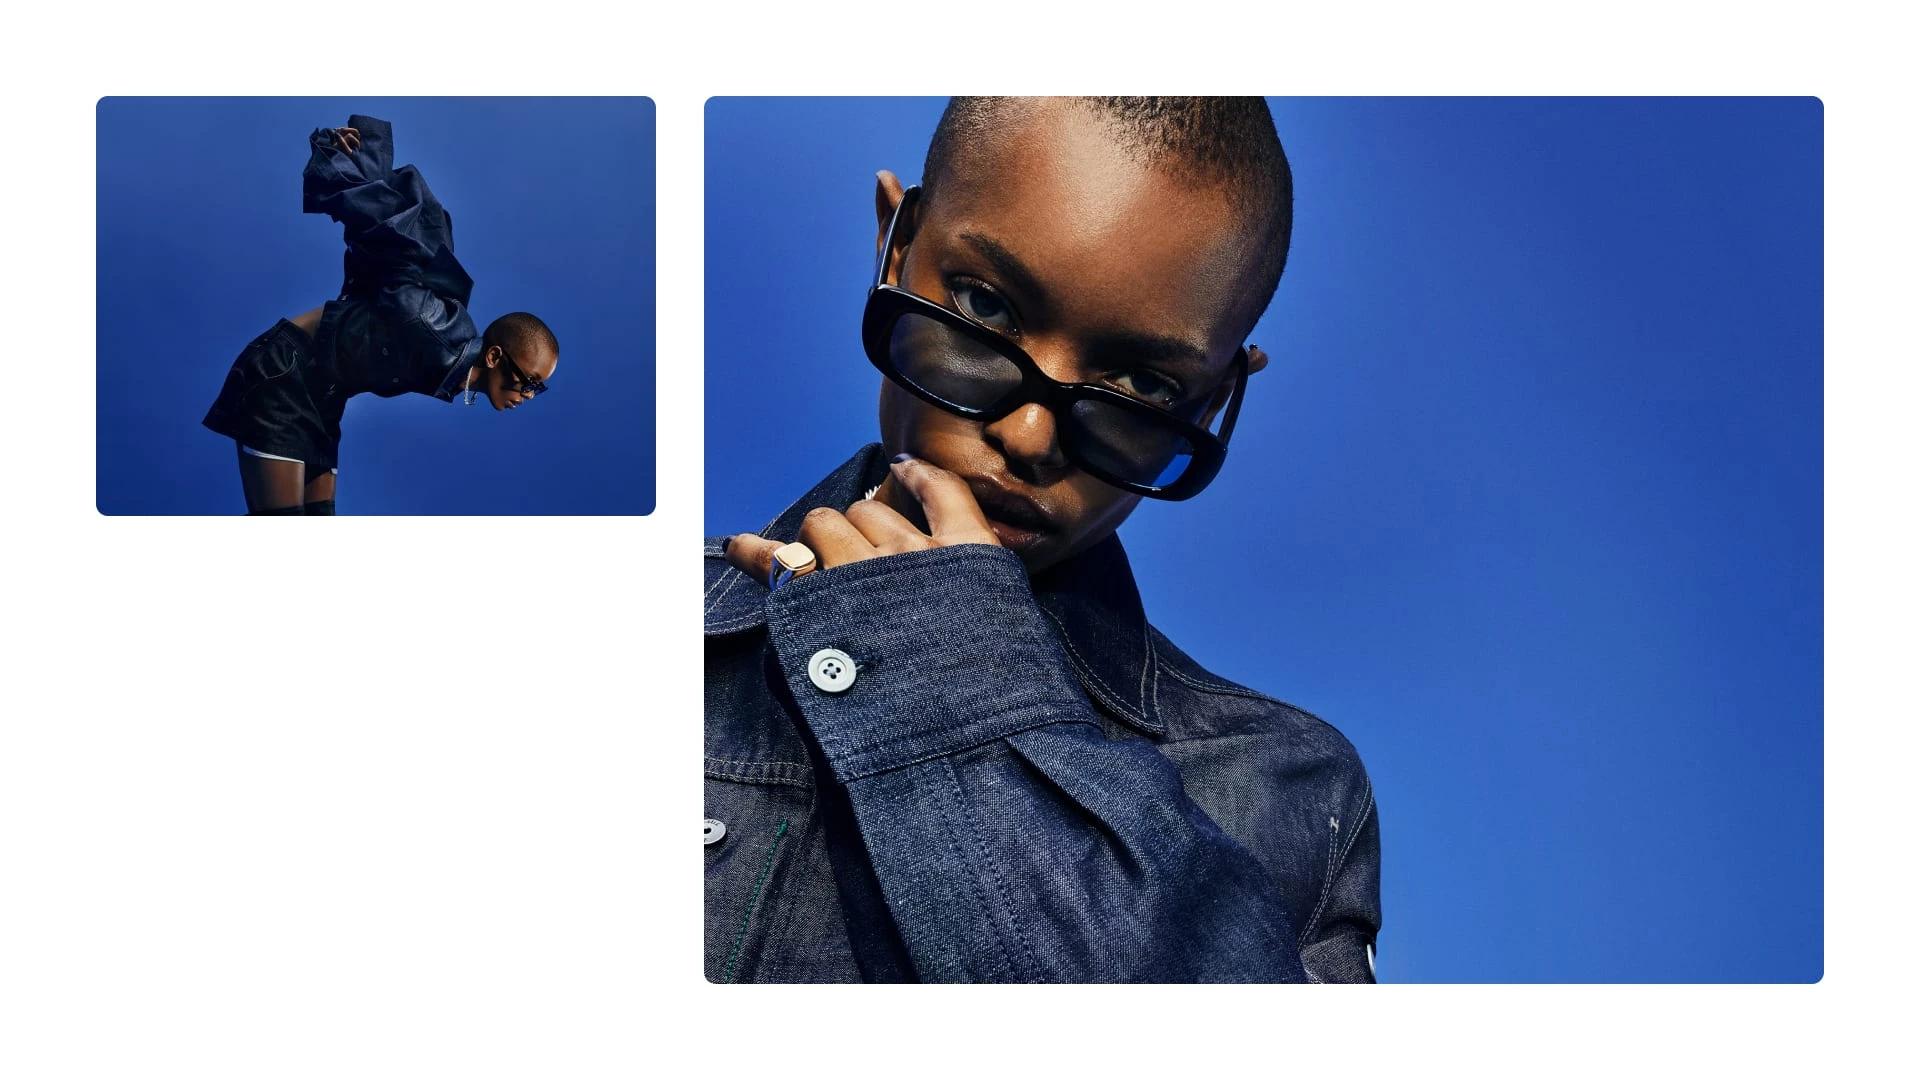  Två bilder på modeller som bär G-Star RAW:s jeans. Båda poserar med solglasögon.